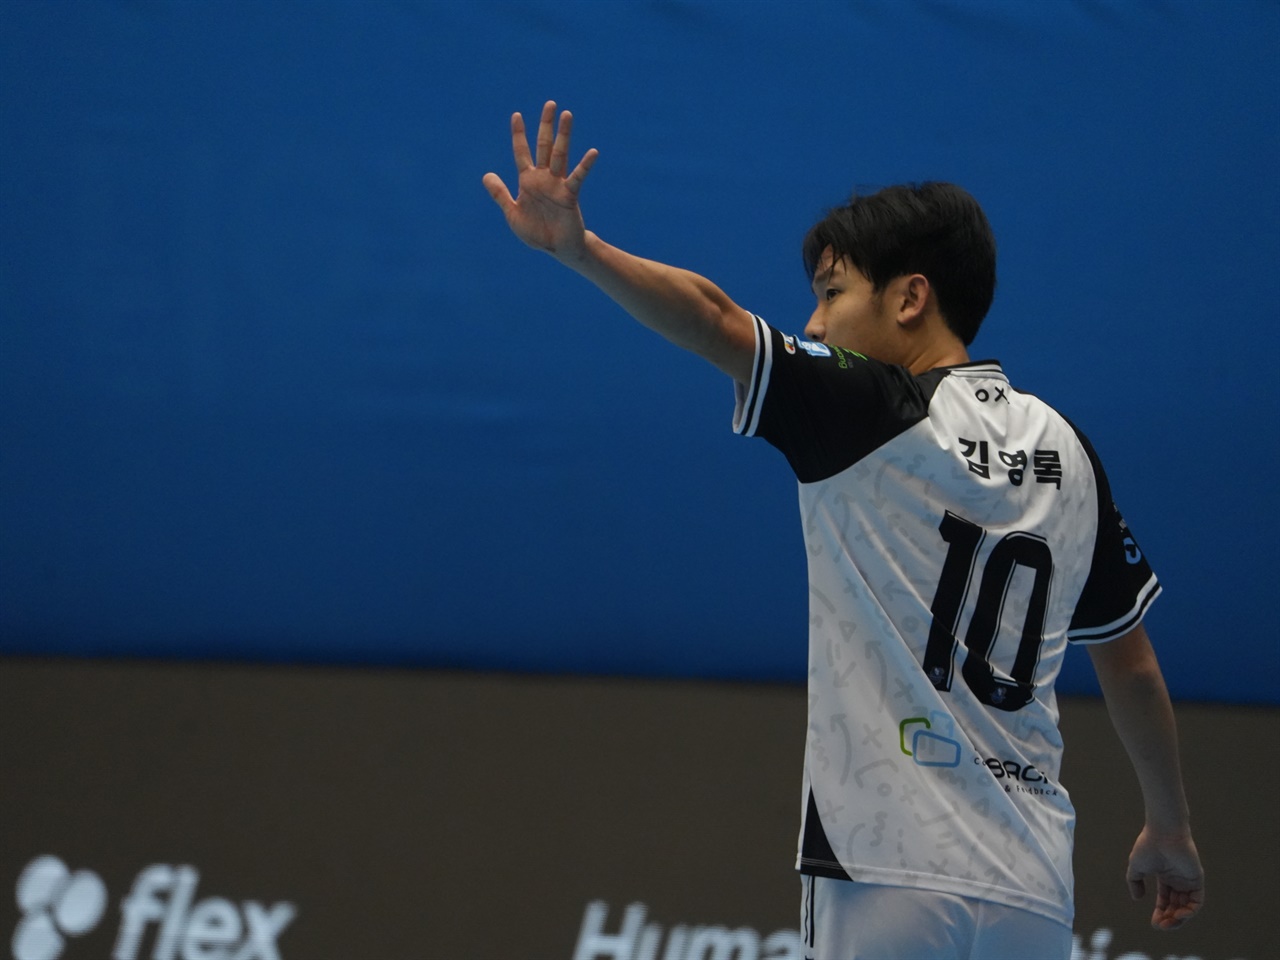 다섯 번째골을 기록한 김영록 김영록이 다섯 번째 골을 넣고 세레모니를 하고 있다.